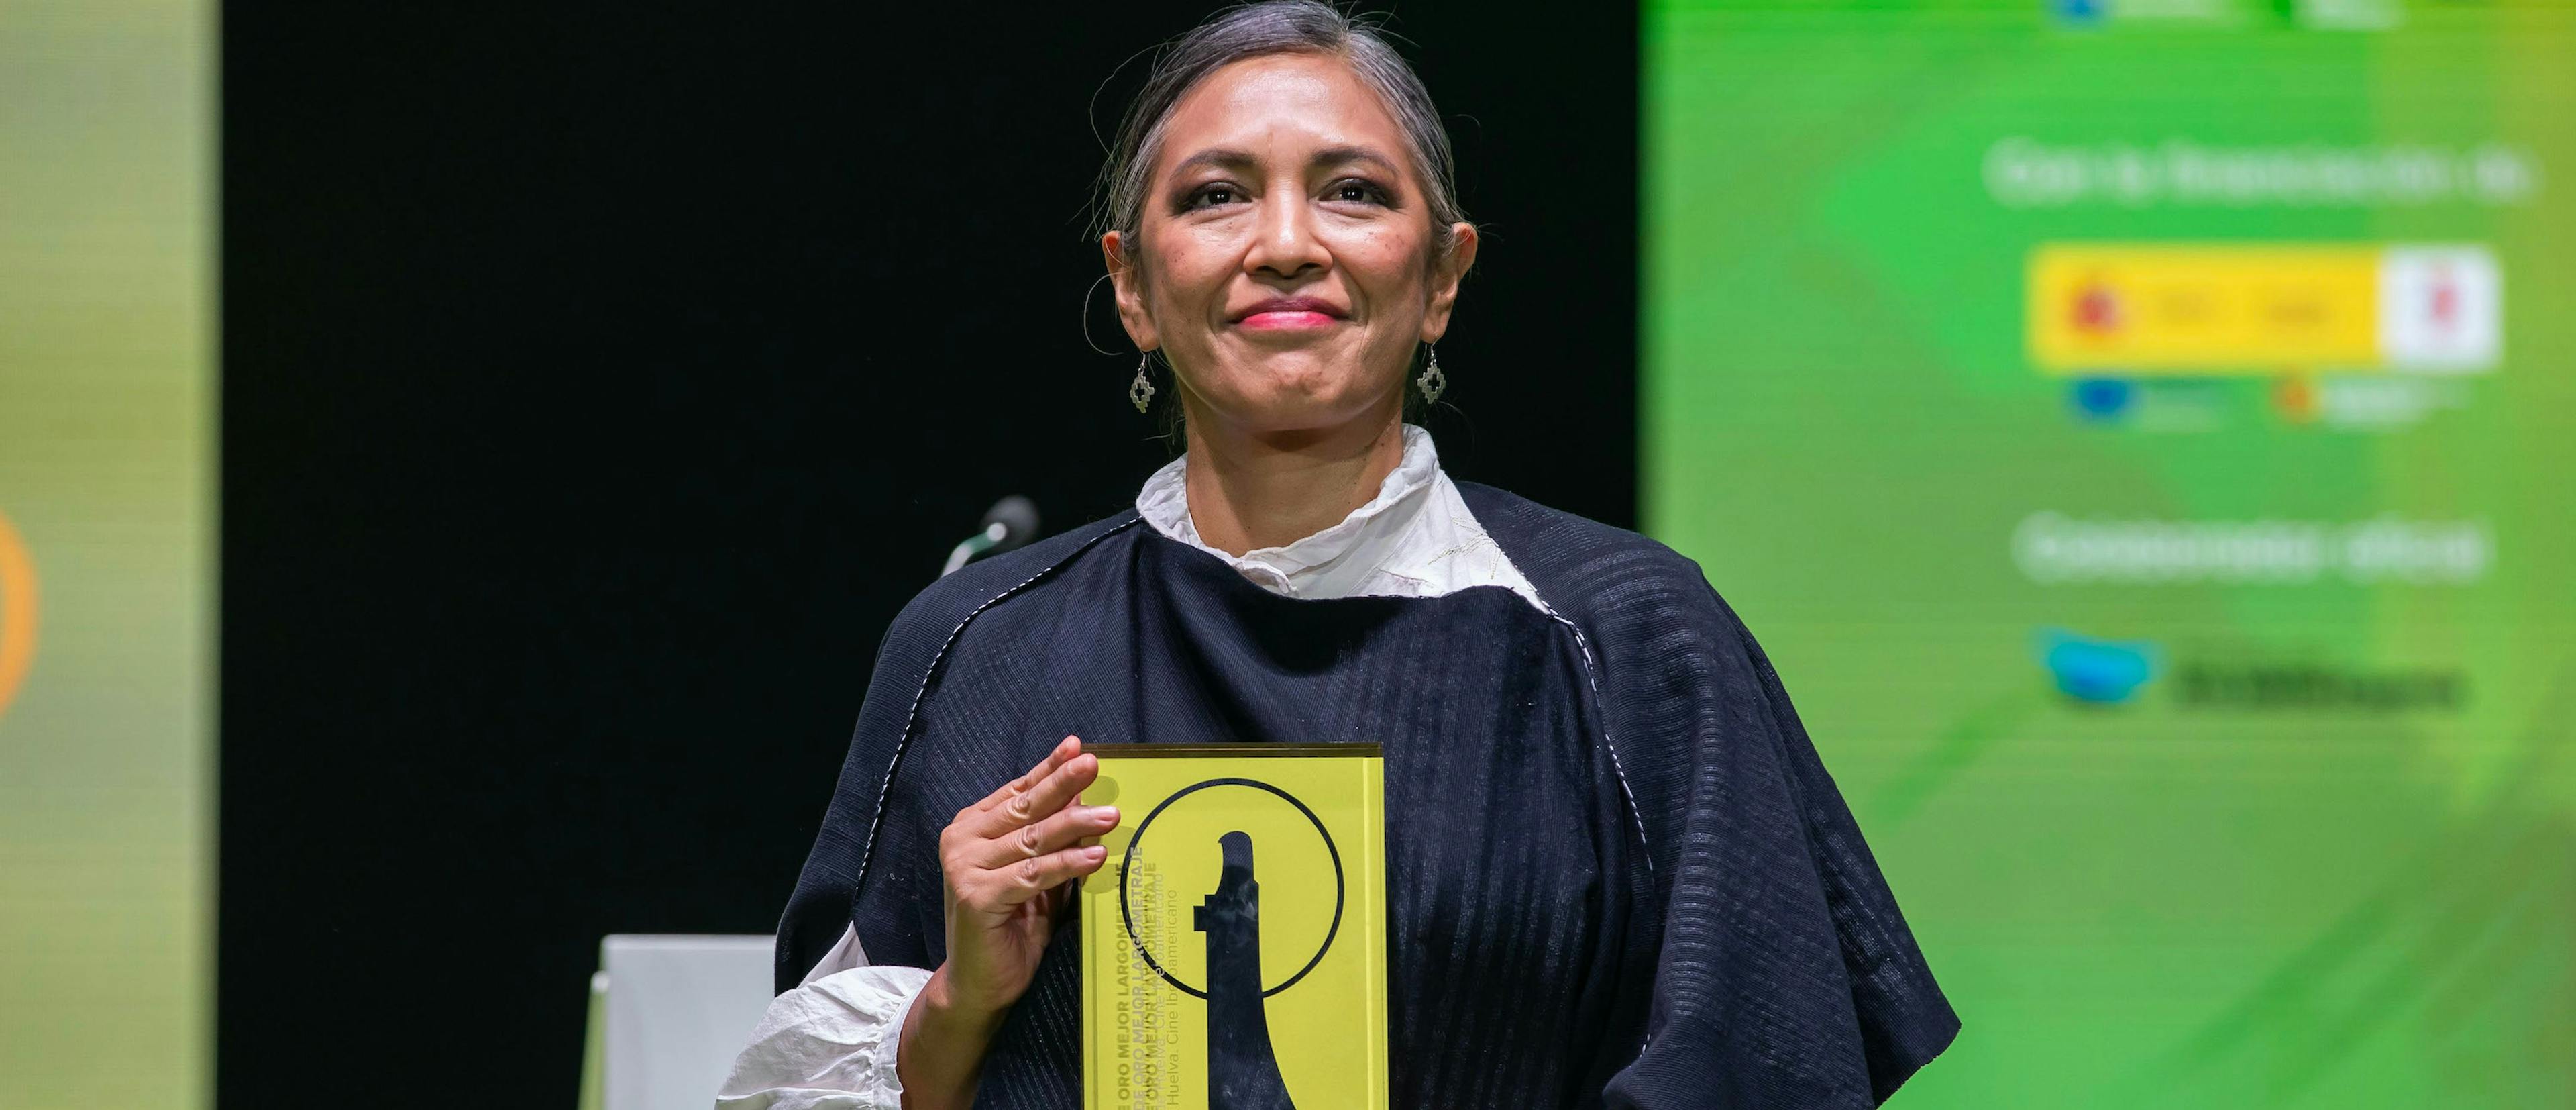 La directora mexicana Ángeles Cruz posa con el Colón de Oro para 'Valentina o la serenidad' en el Festival de Huelva